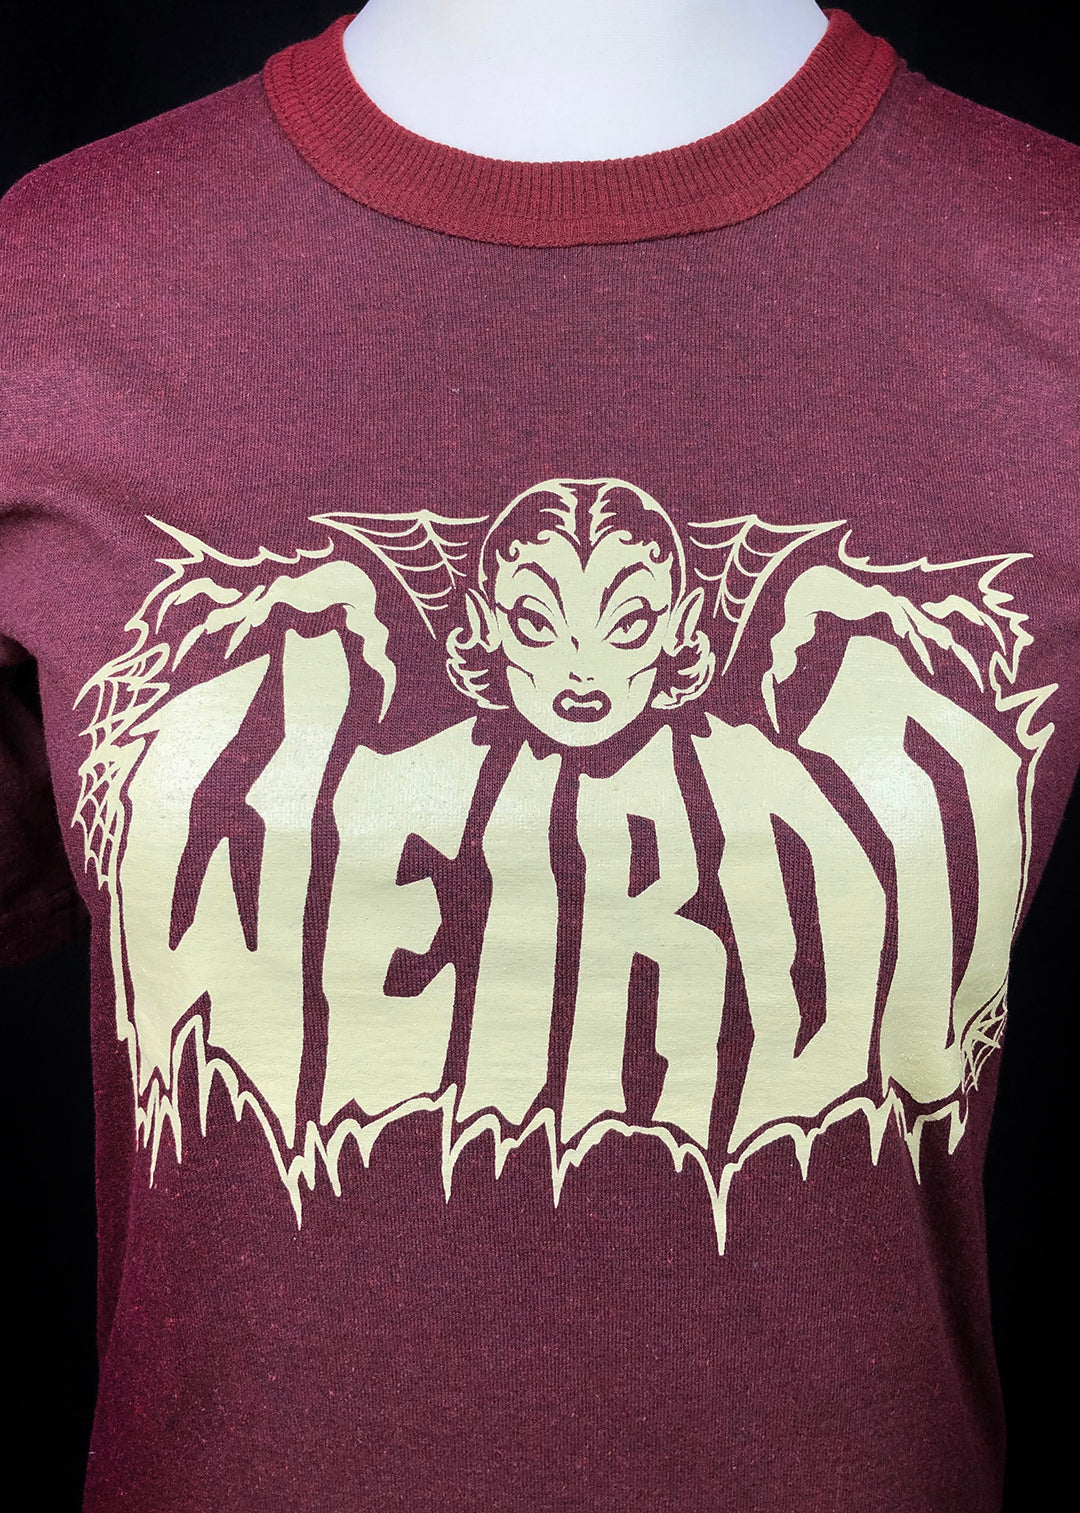 Women's T-shirt. Weirdo